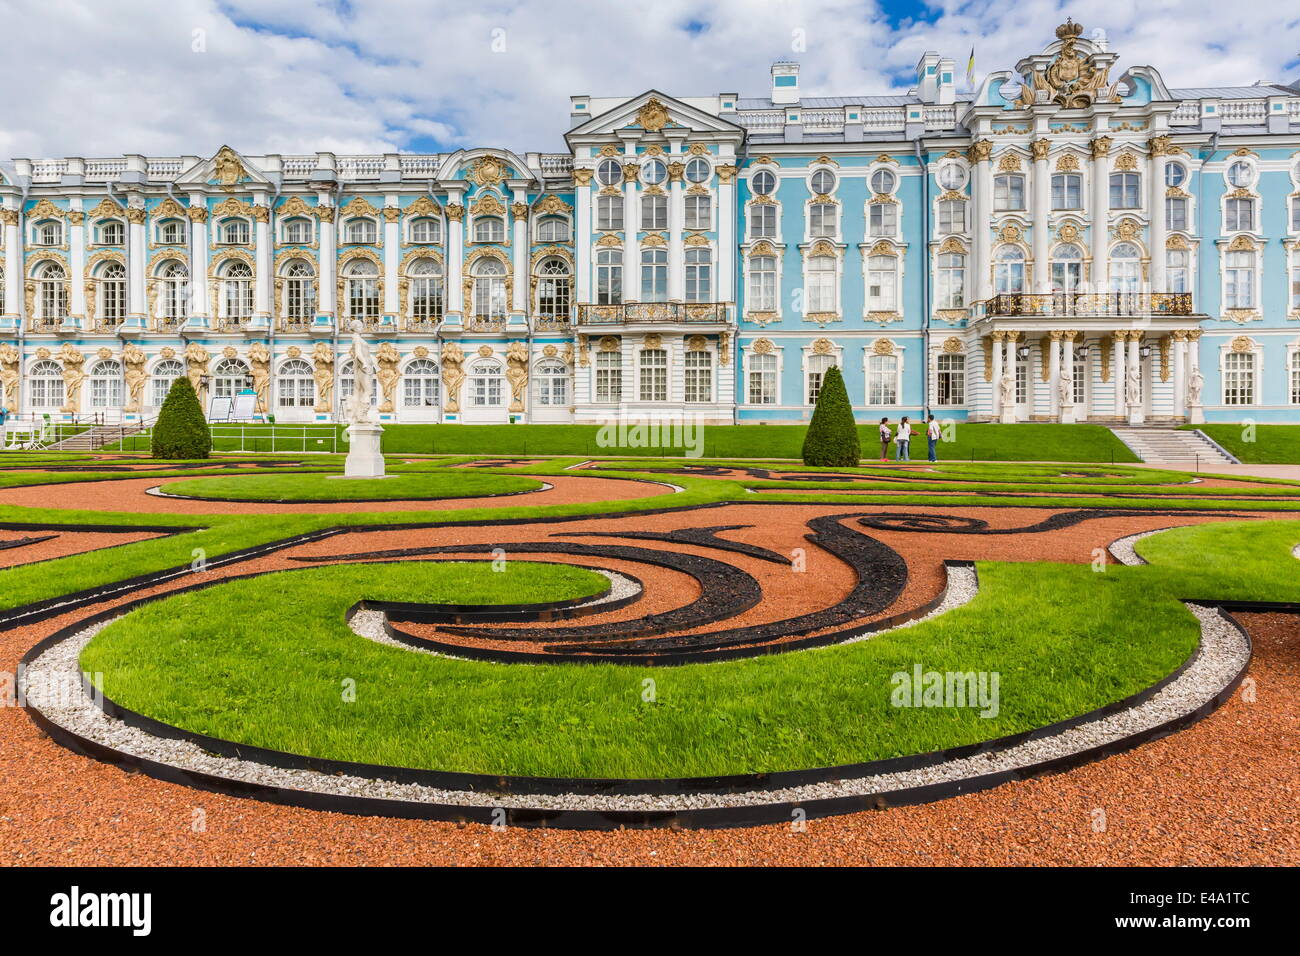 Vue sur le jardin à la française au Palais de Catherine, Tsarskoe Selo, Saint-Pétersbourg, Russie, Europe Banque D'Images